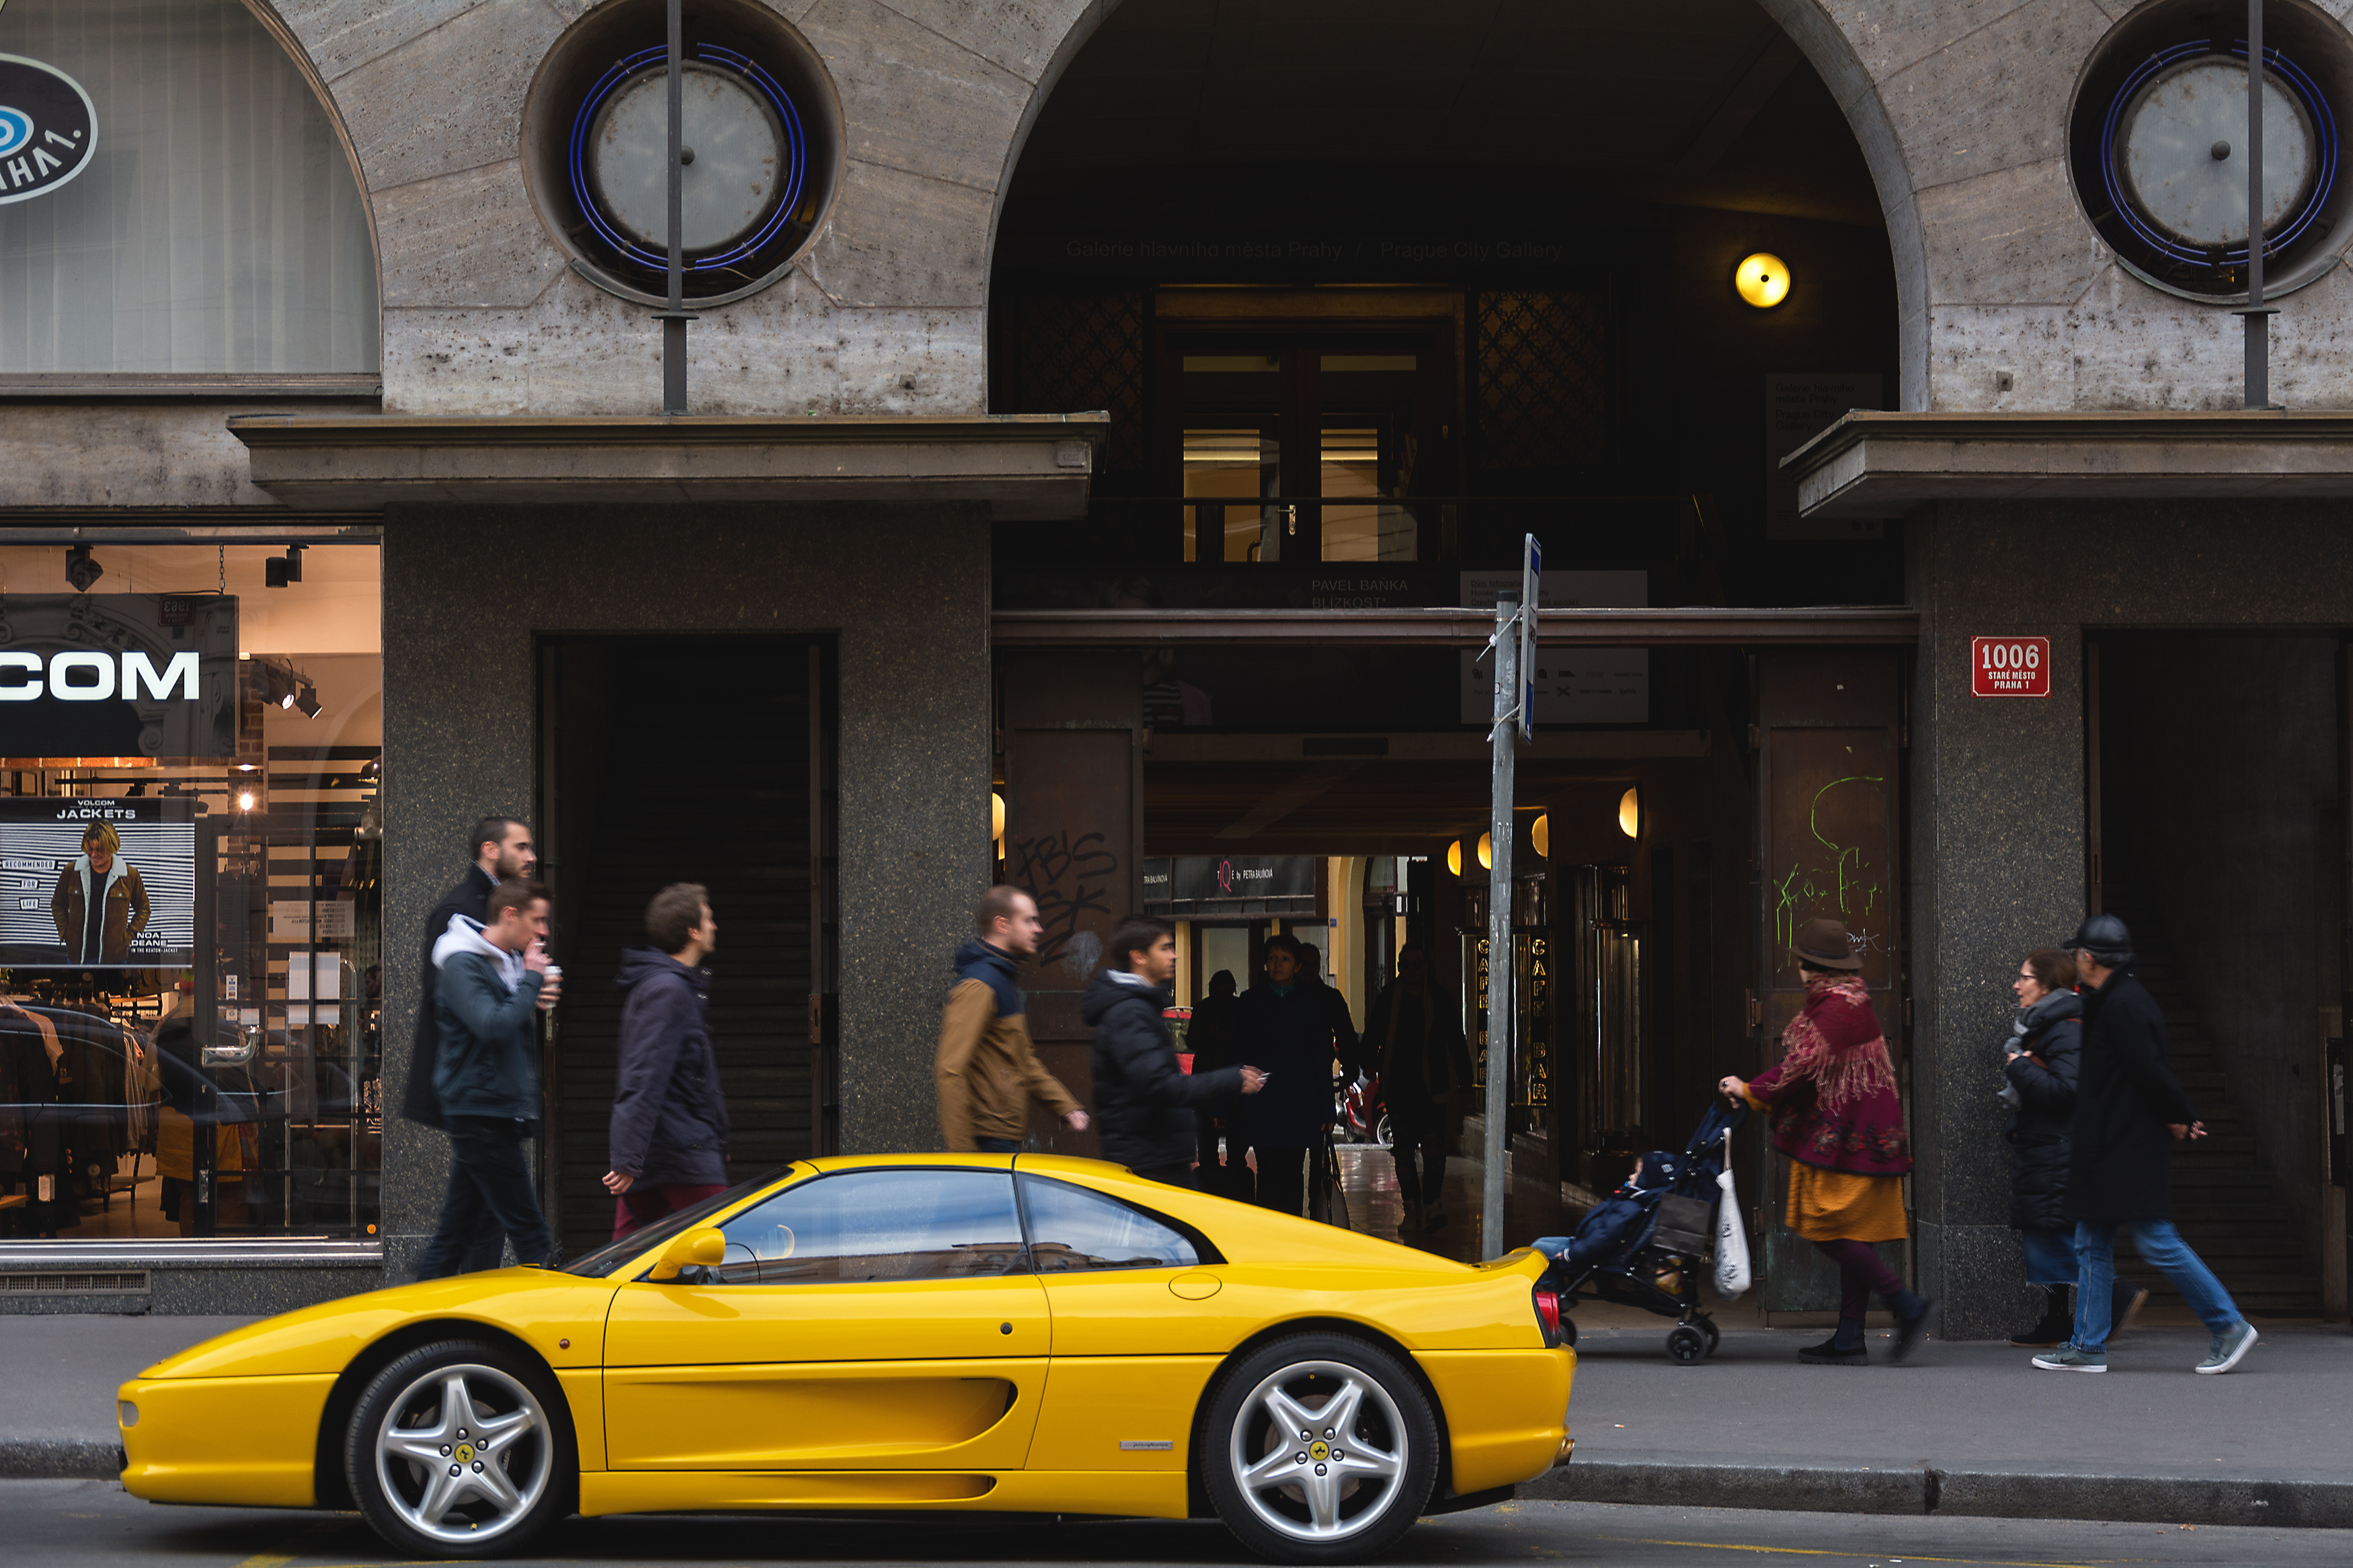 黄色のフェラーリf355スポーツカー 無料のストックフォト Libreshot